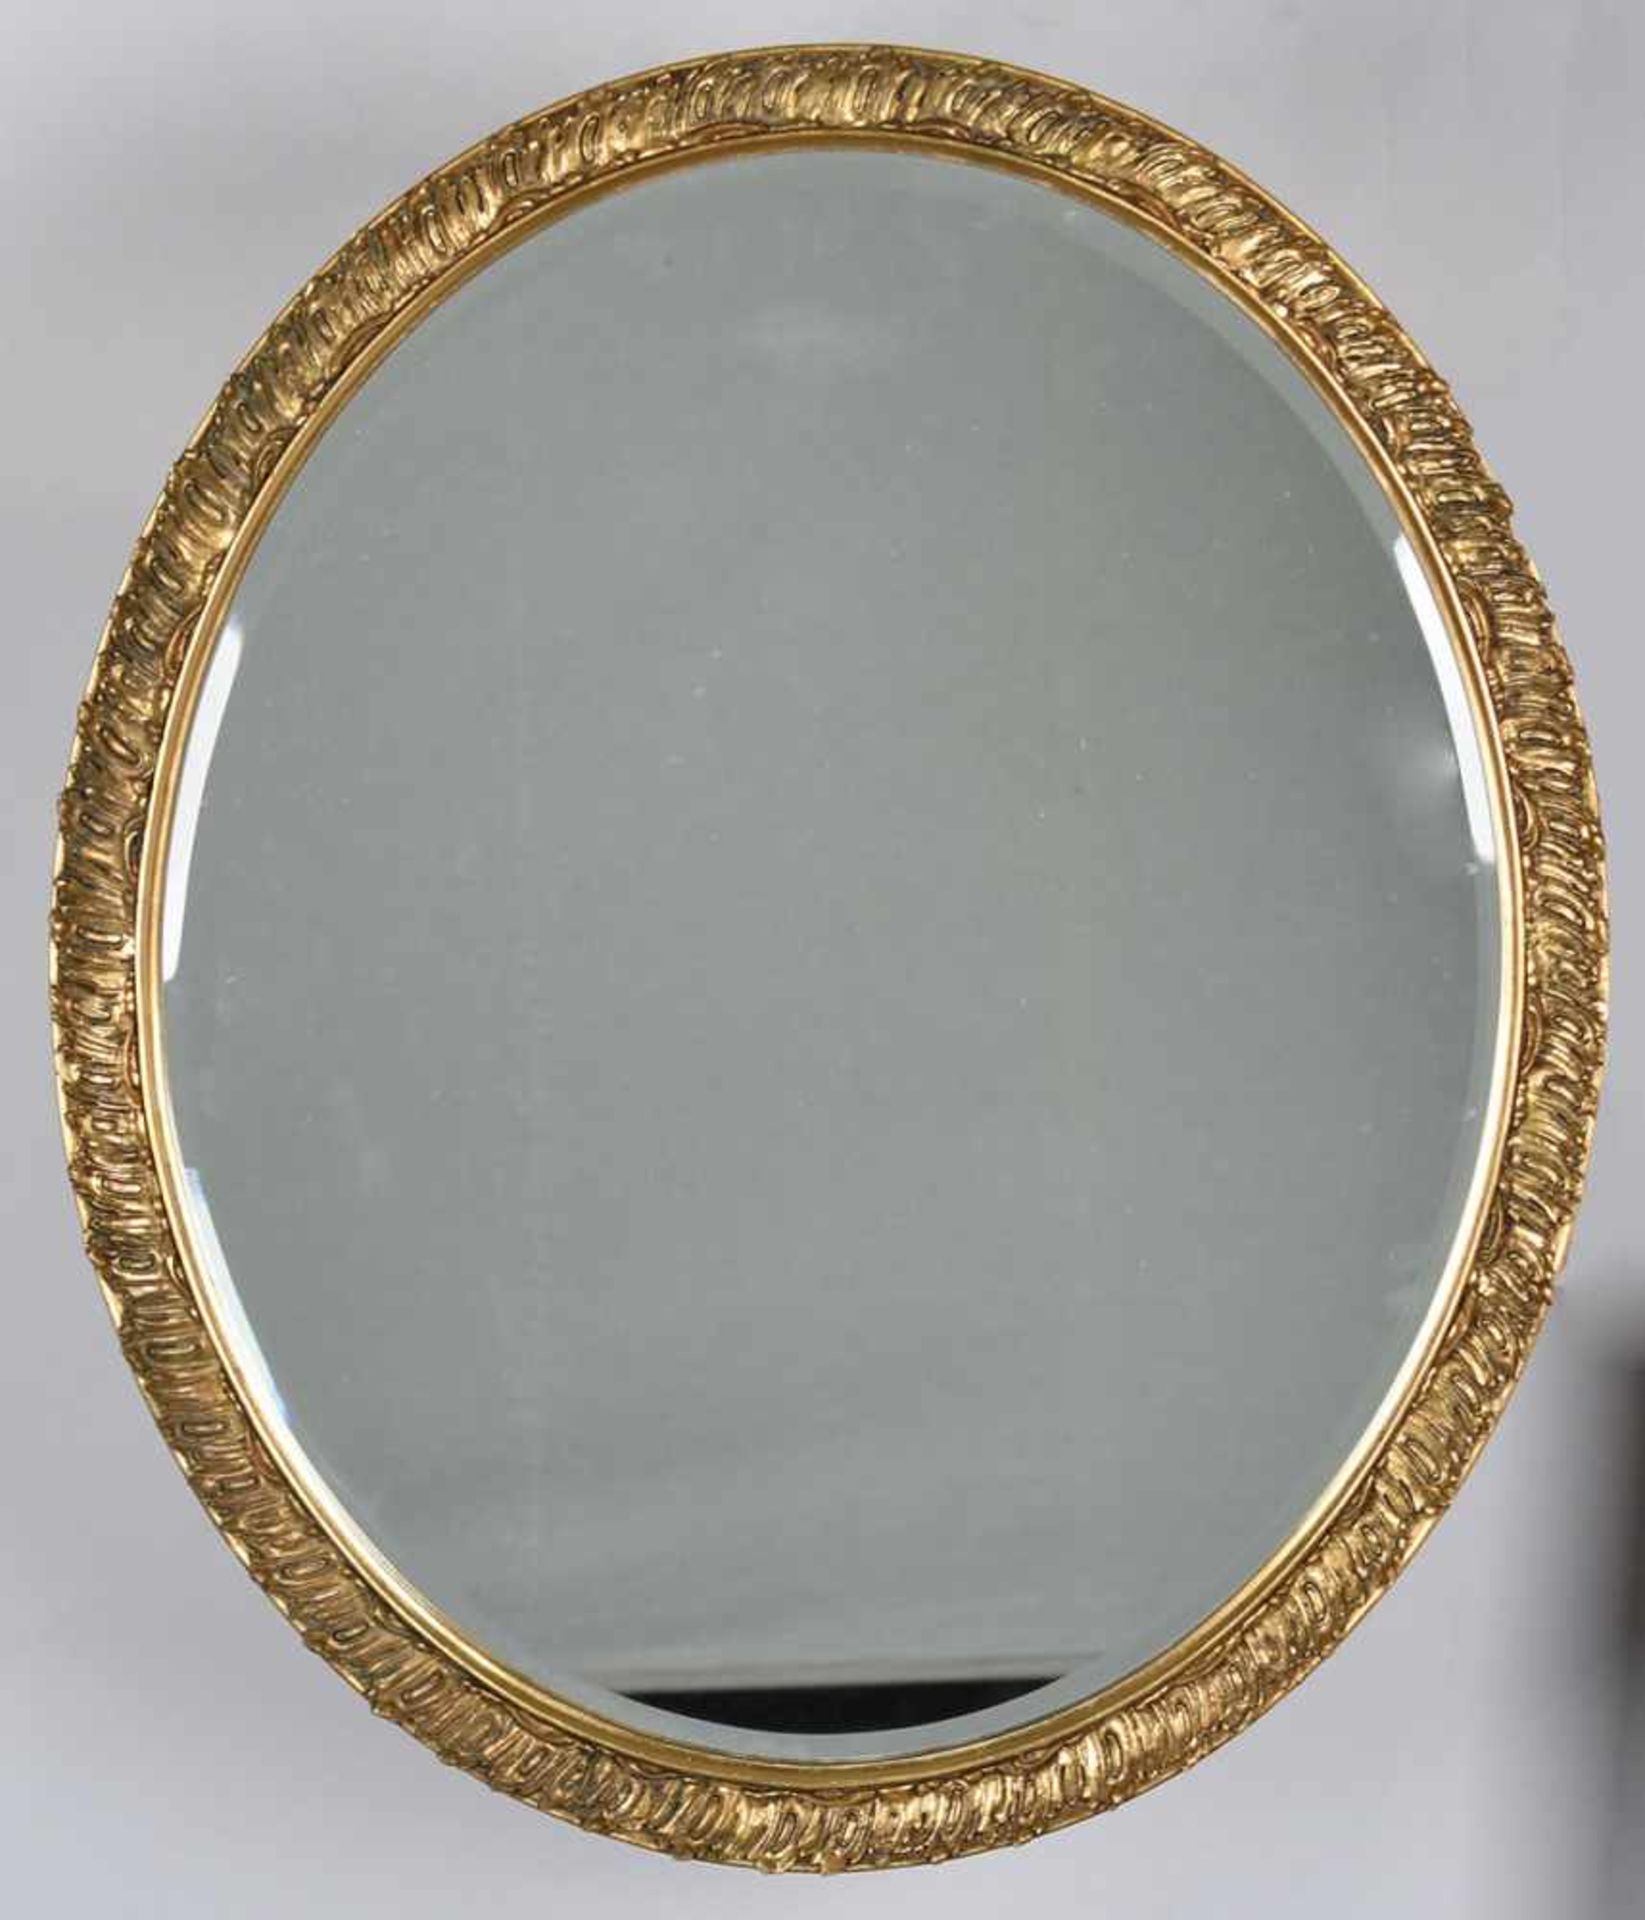 Wandspiegel ovale facettierte Spiegelfläche in goldfarbener Rocaillenrahmung, ca. 66,5 x 56,5 cm, - Bild 2 aus 2